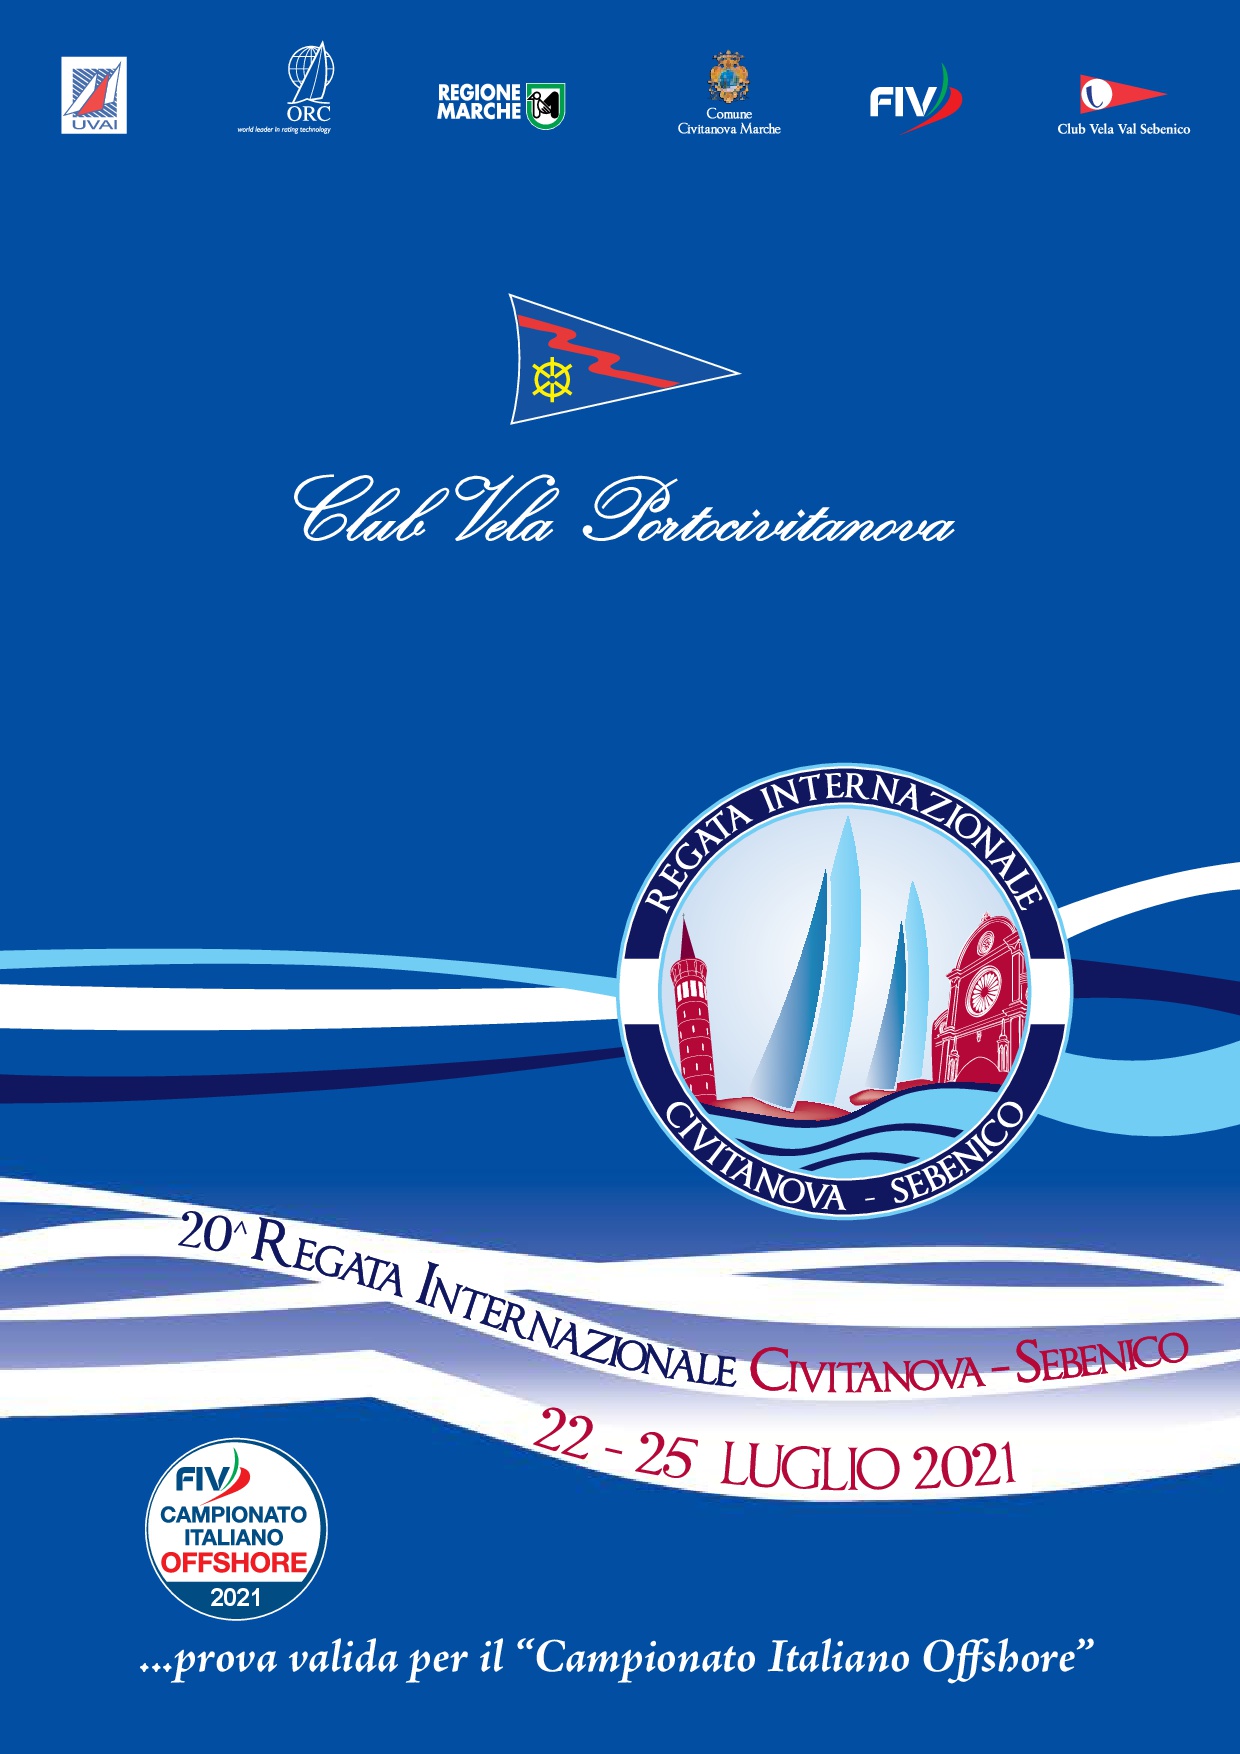 22 / 25 luglio 2021 – CIVITANOVA SEBENICO valida per il Campionato Italiano Offshore (valida Palo d’Oro 2021)